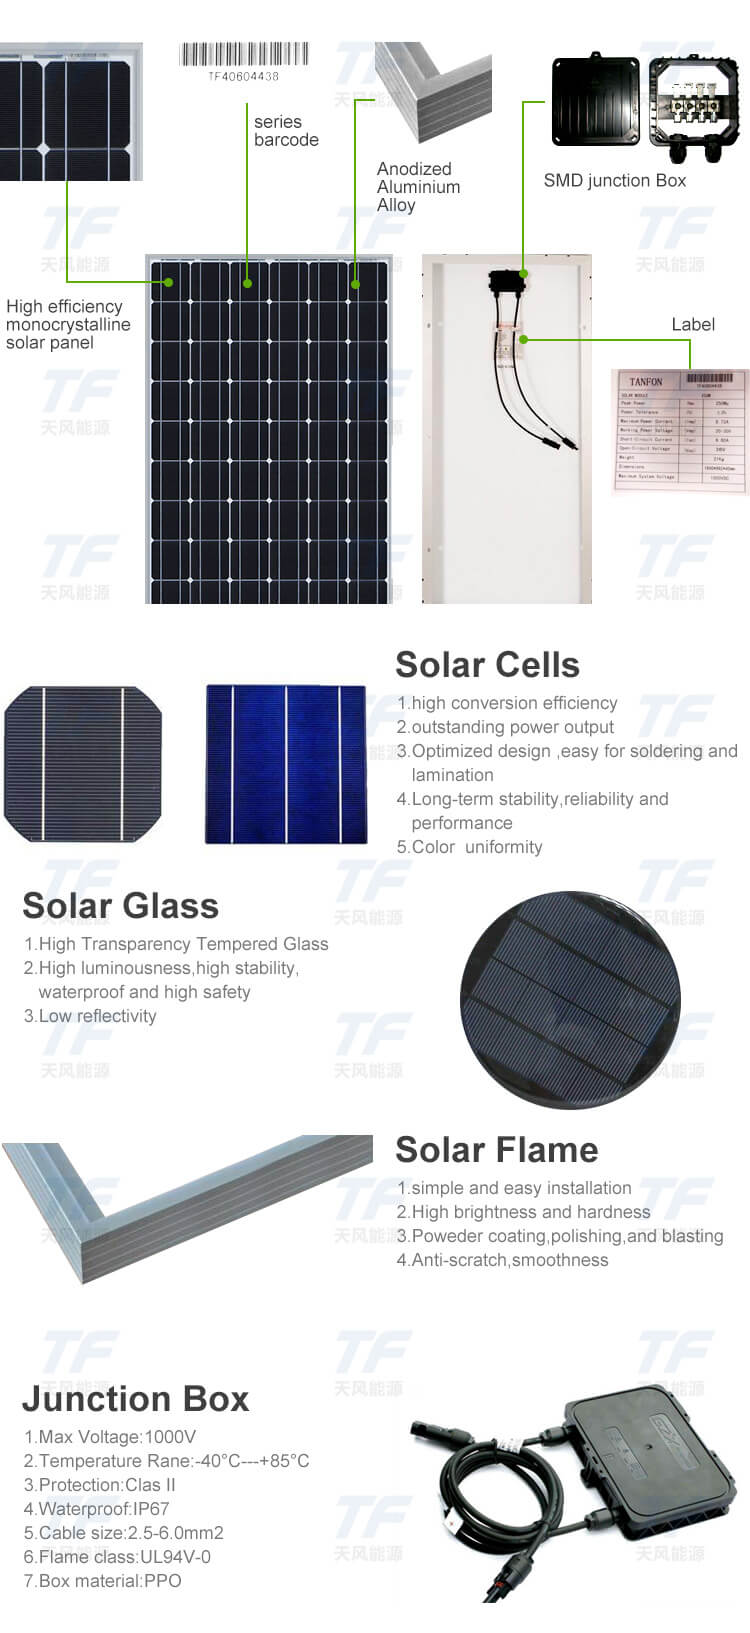 solar panels for house